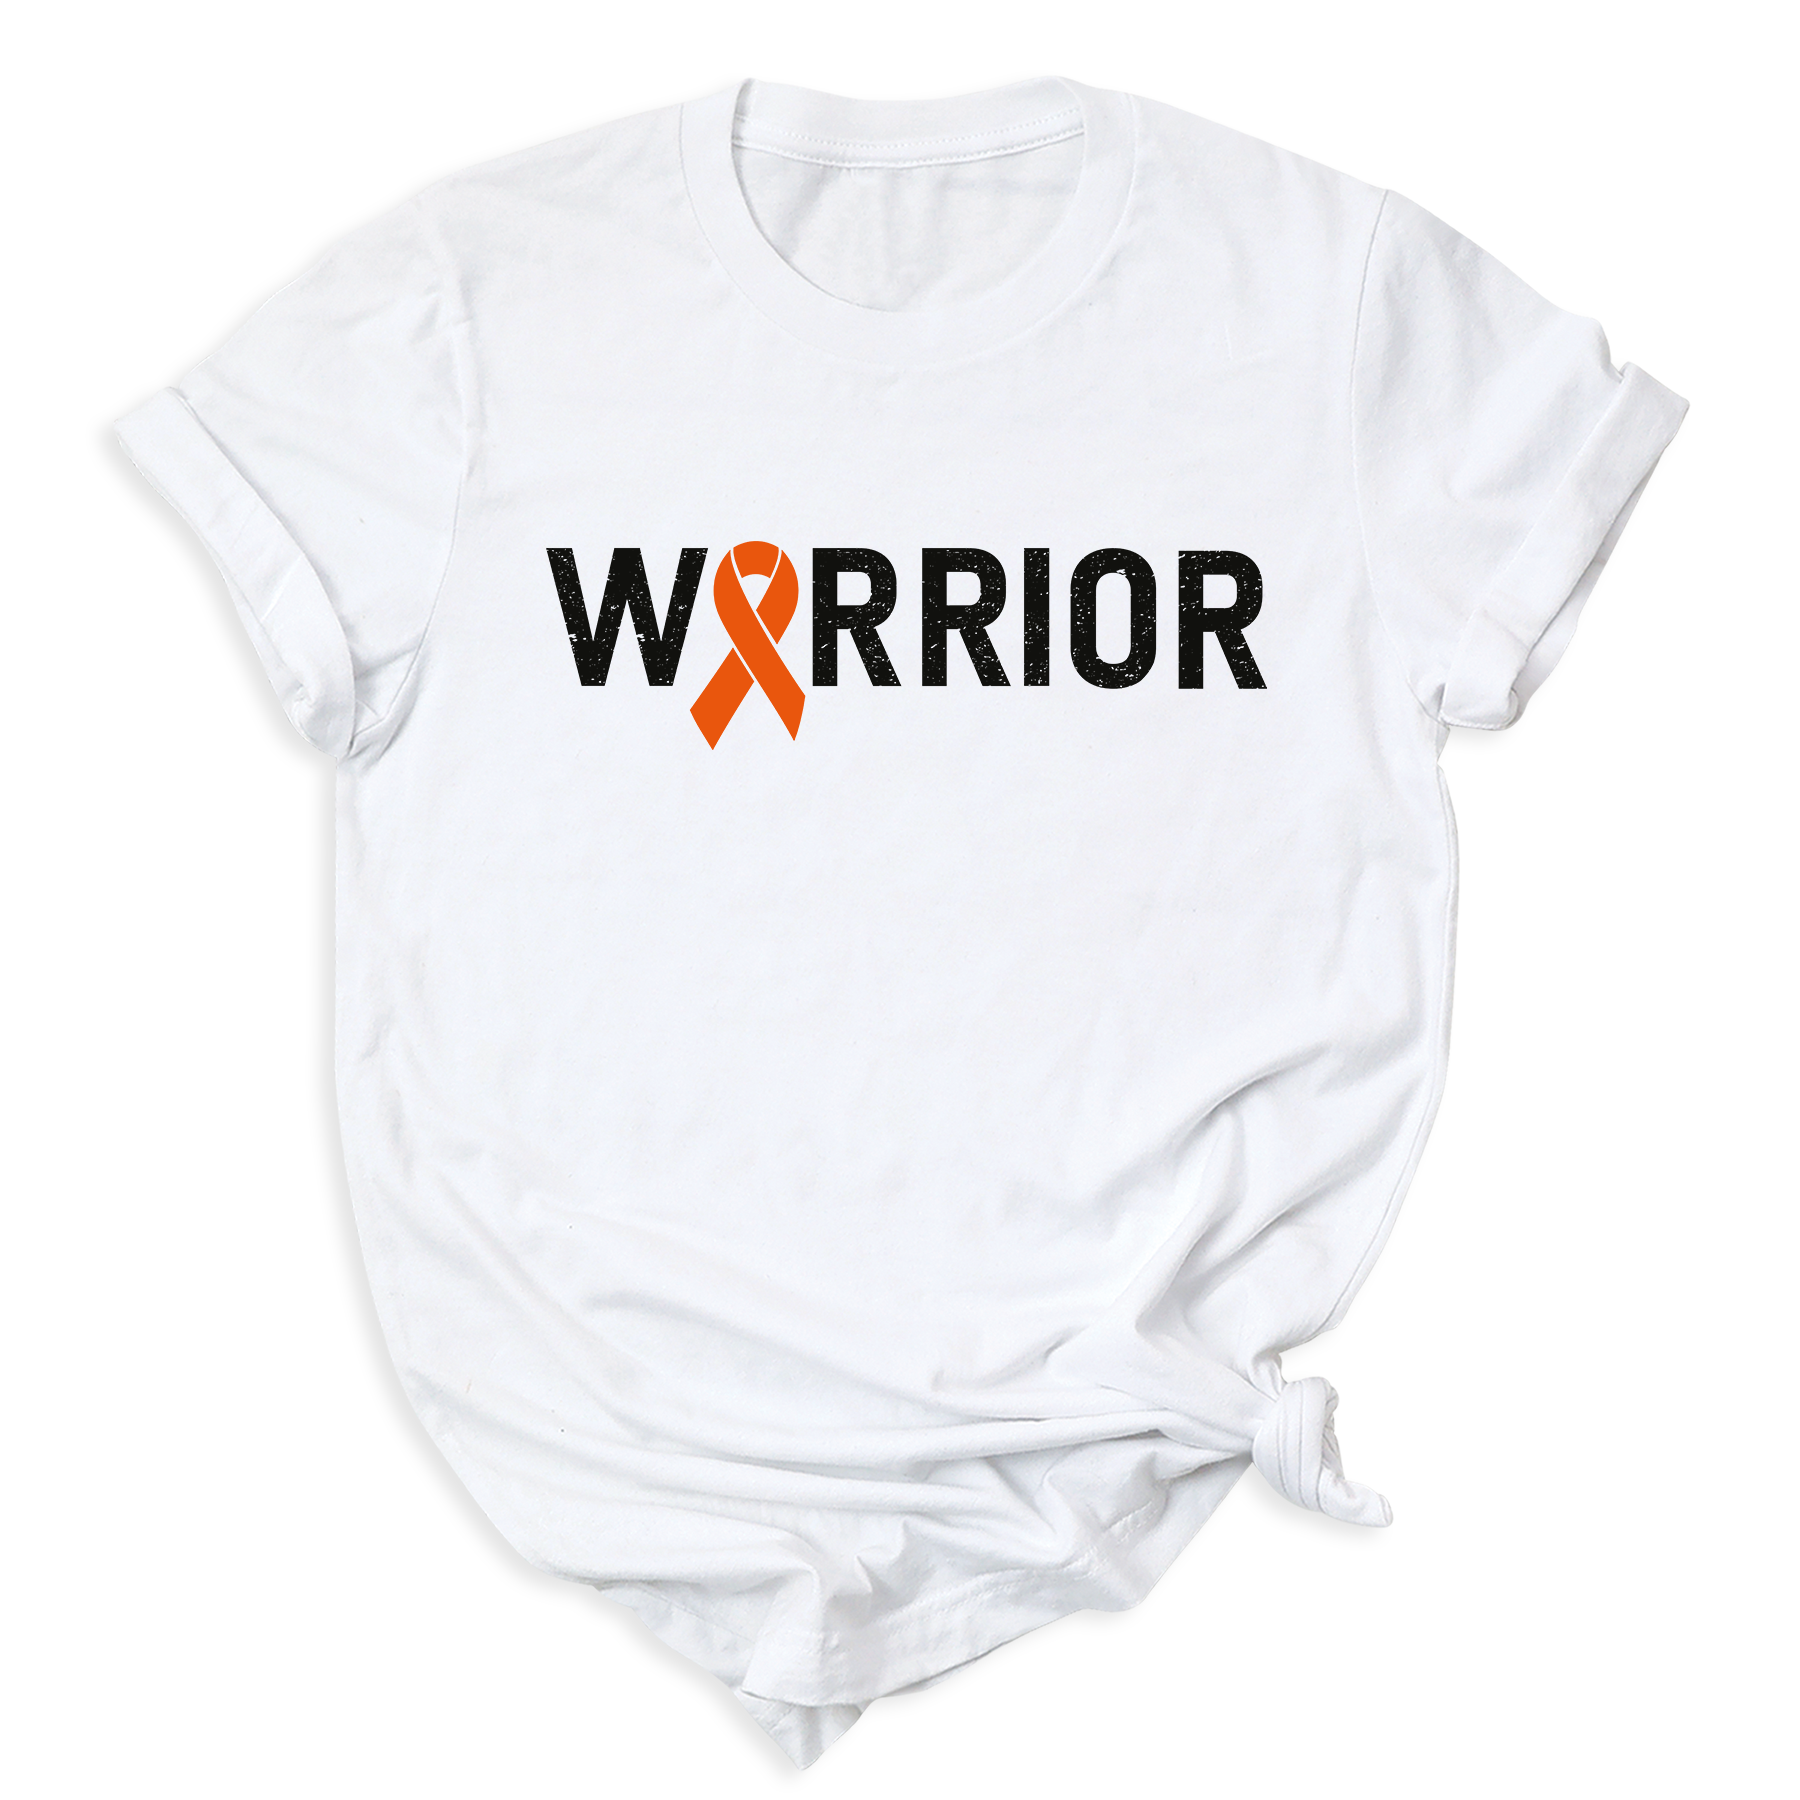 Warriors T-shirt 